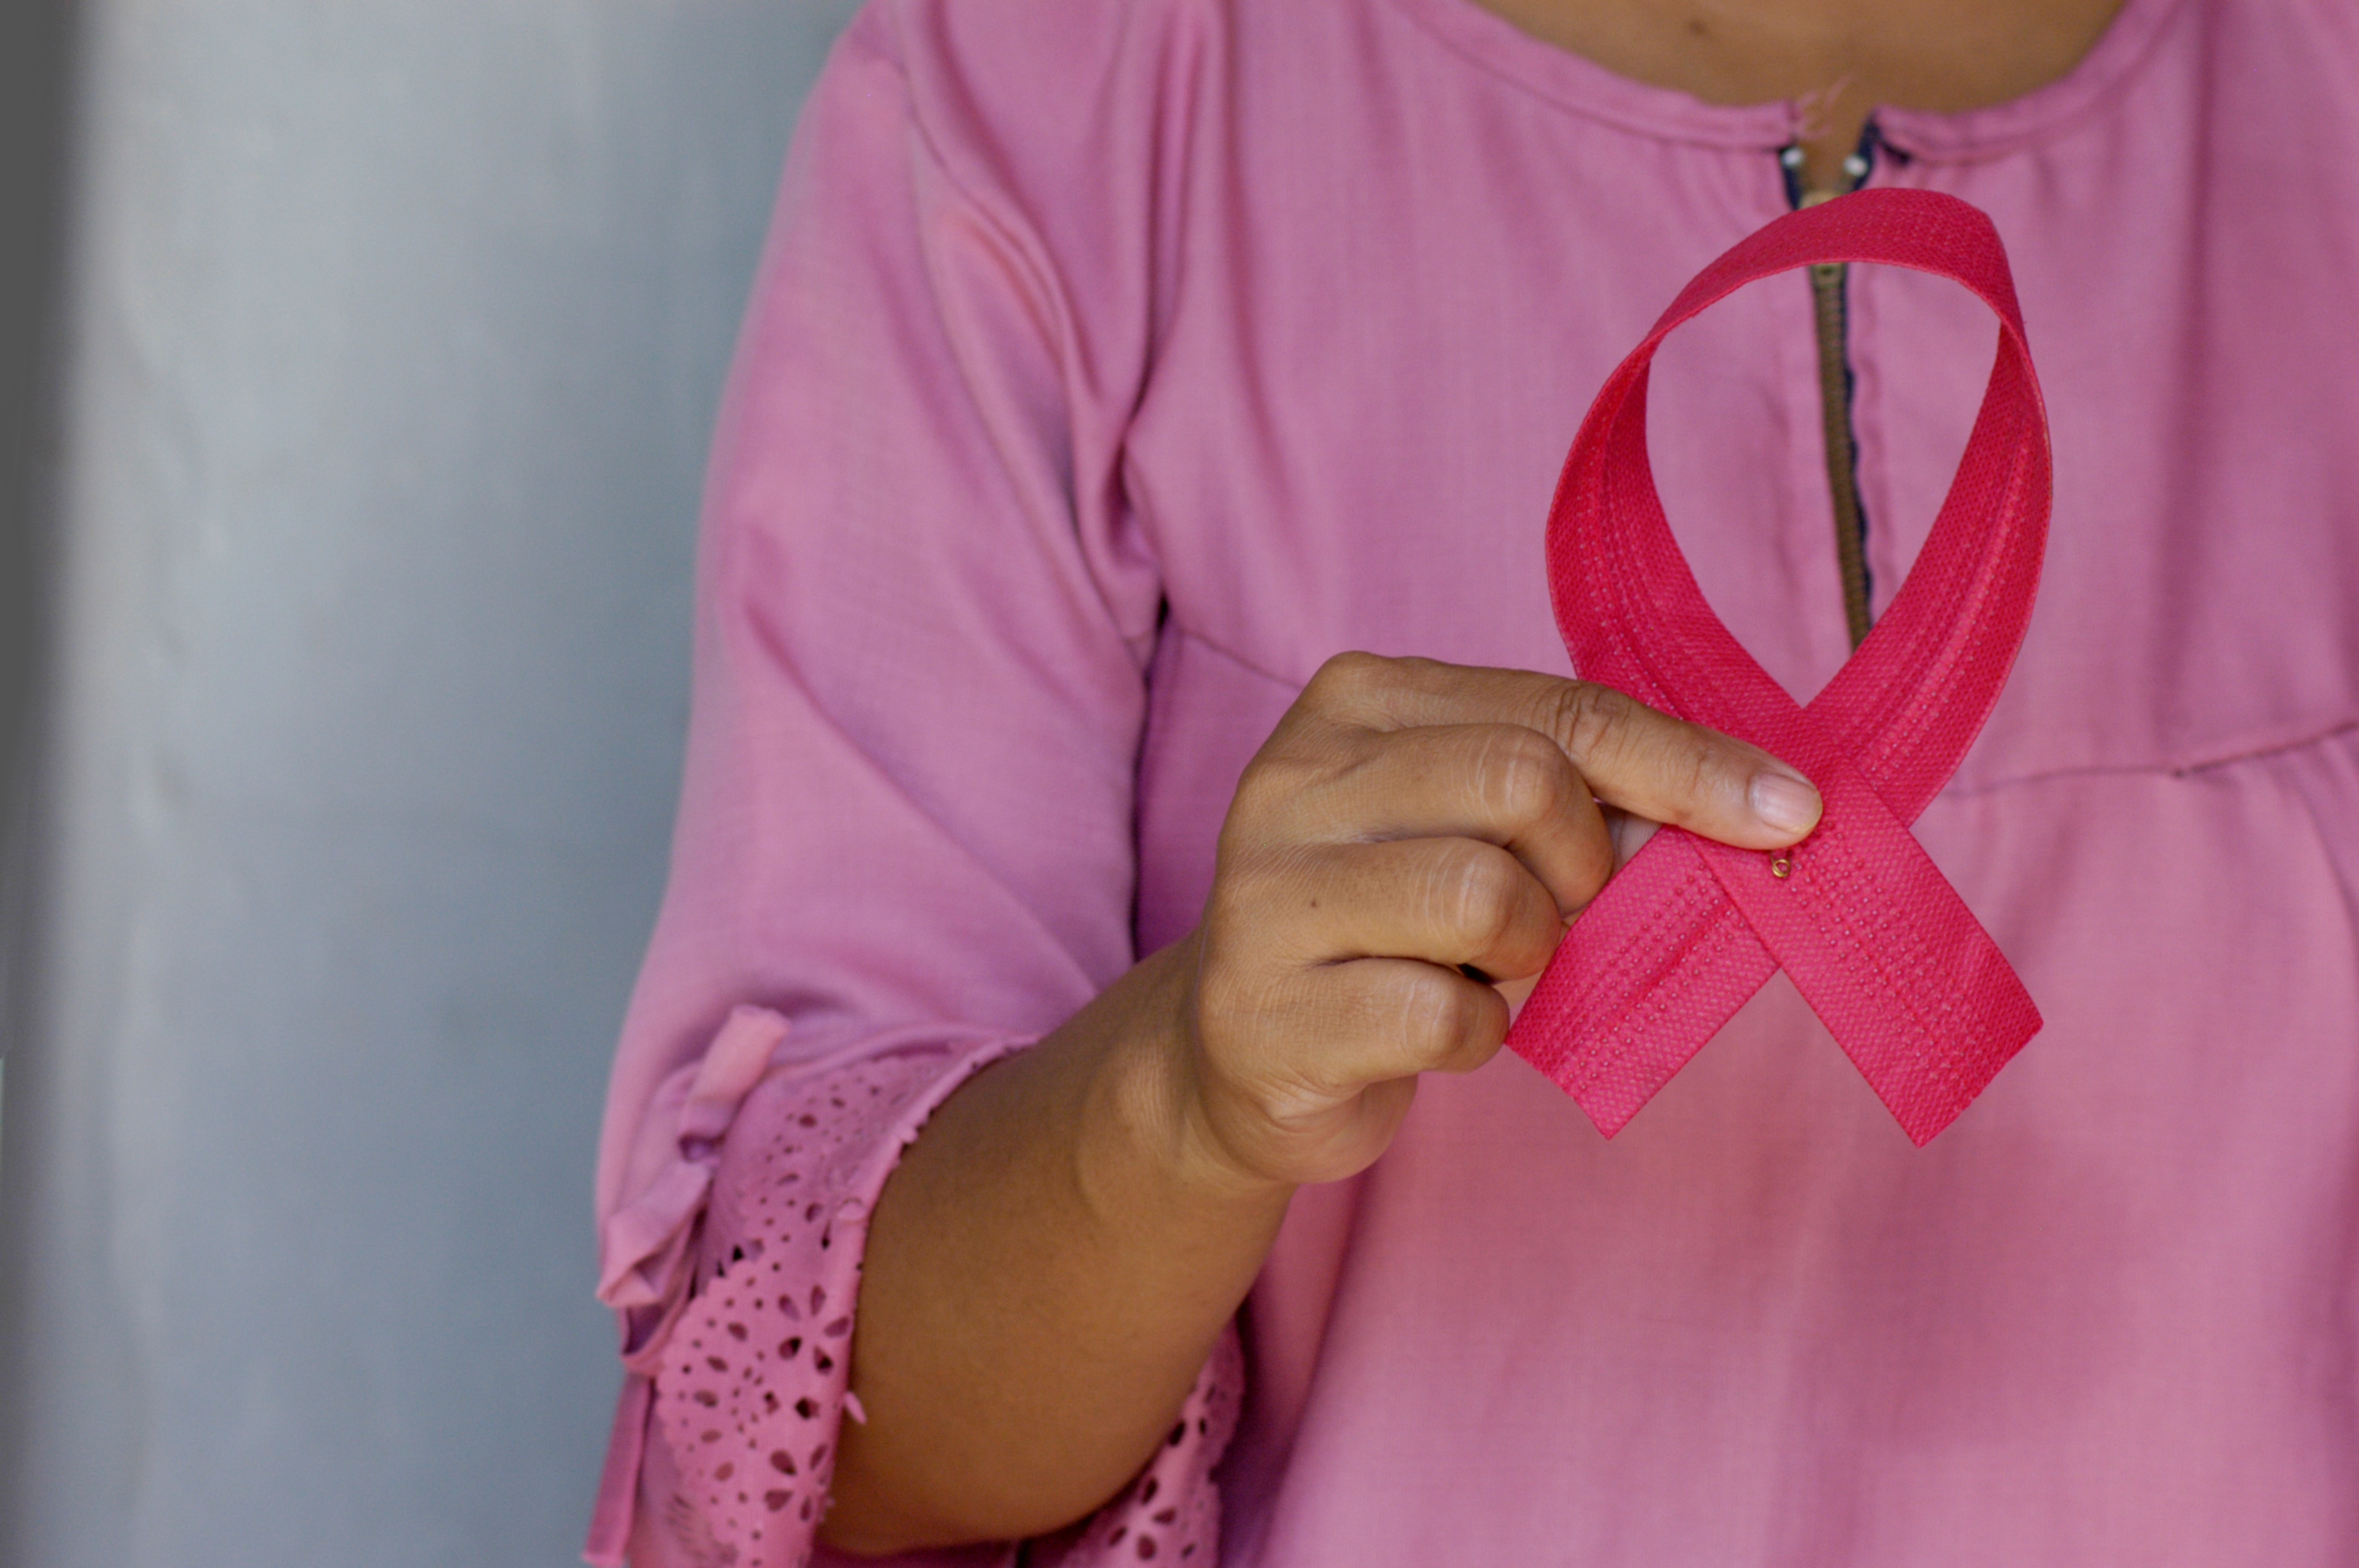 Sedentarismo, obesidad, abuso de alcohol y tabaco podrían aumentar el riesgo de cáncer de mama